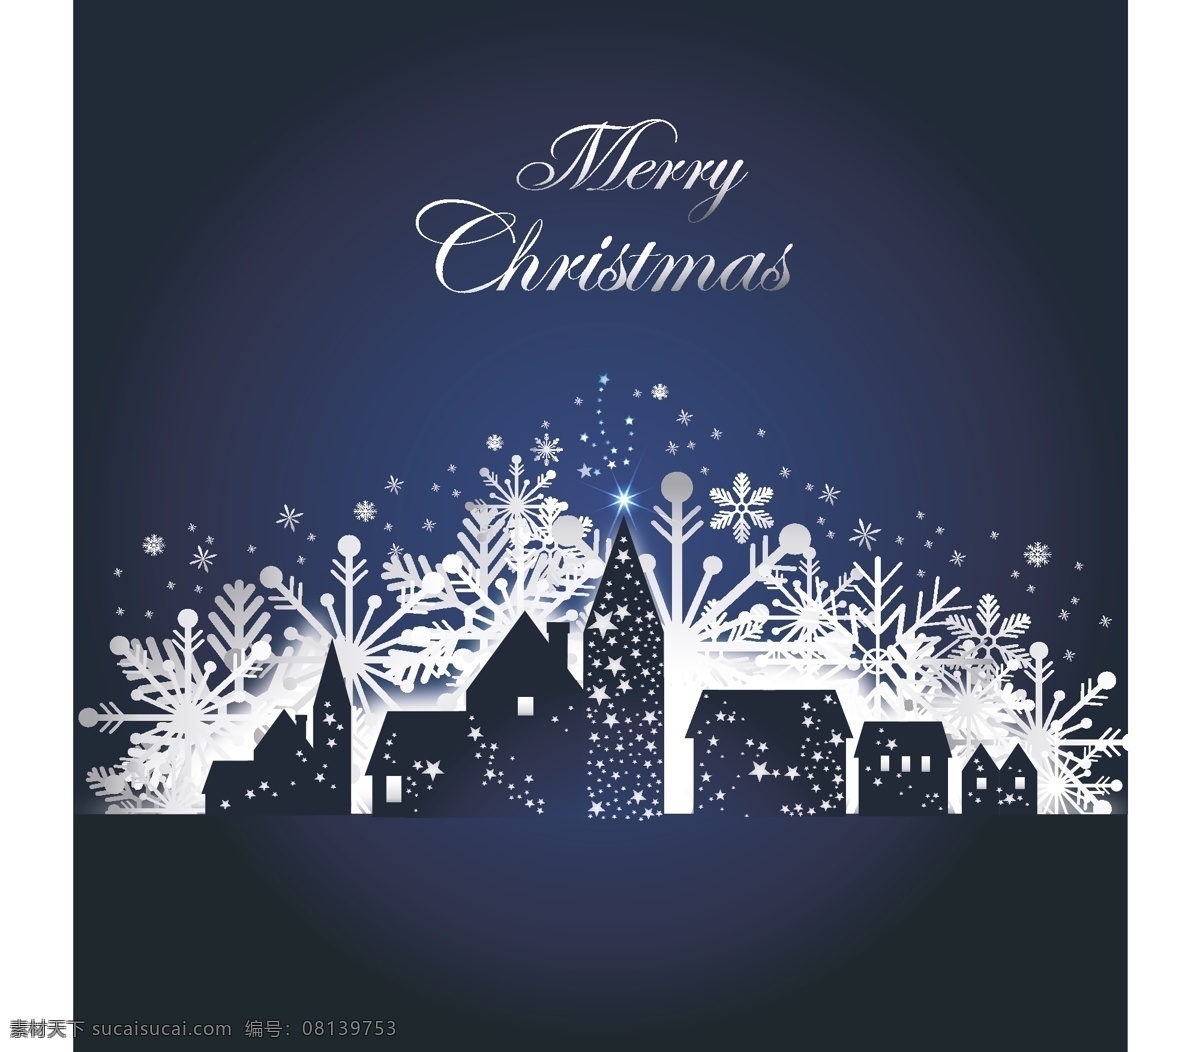 安静 圣诞 雪夜 矢量 村 房子 节日 蓝色 圣诞节 晚上 雪 矢量图 其他节日